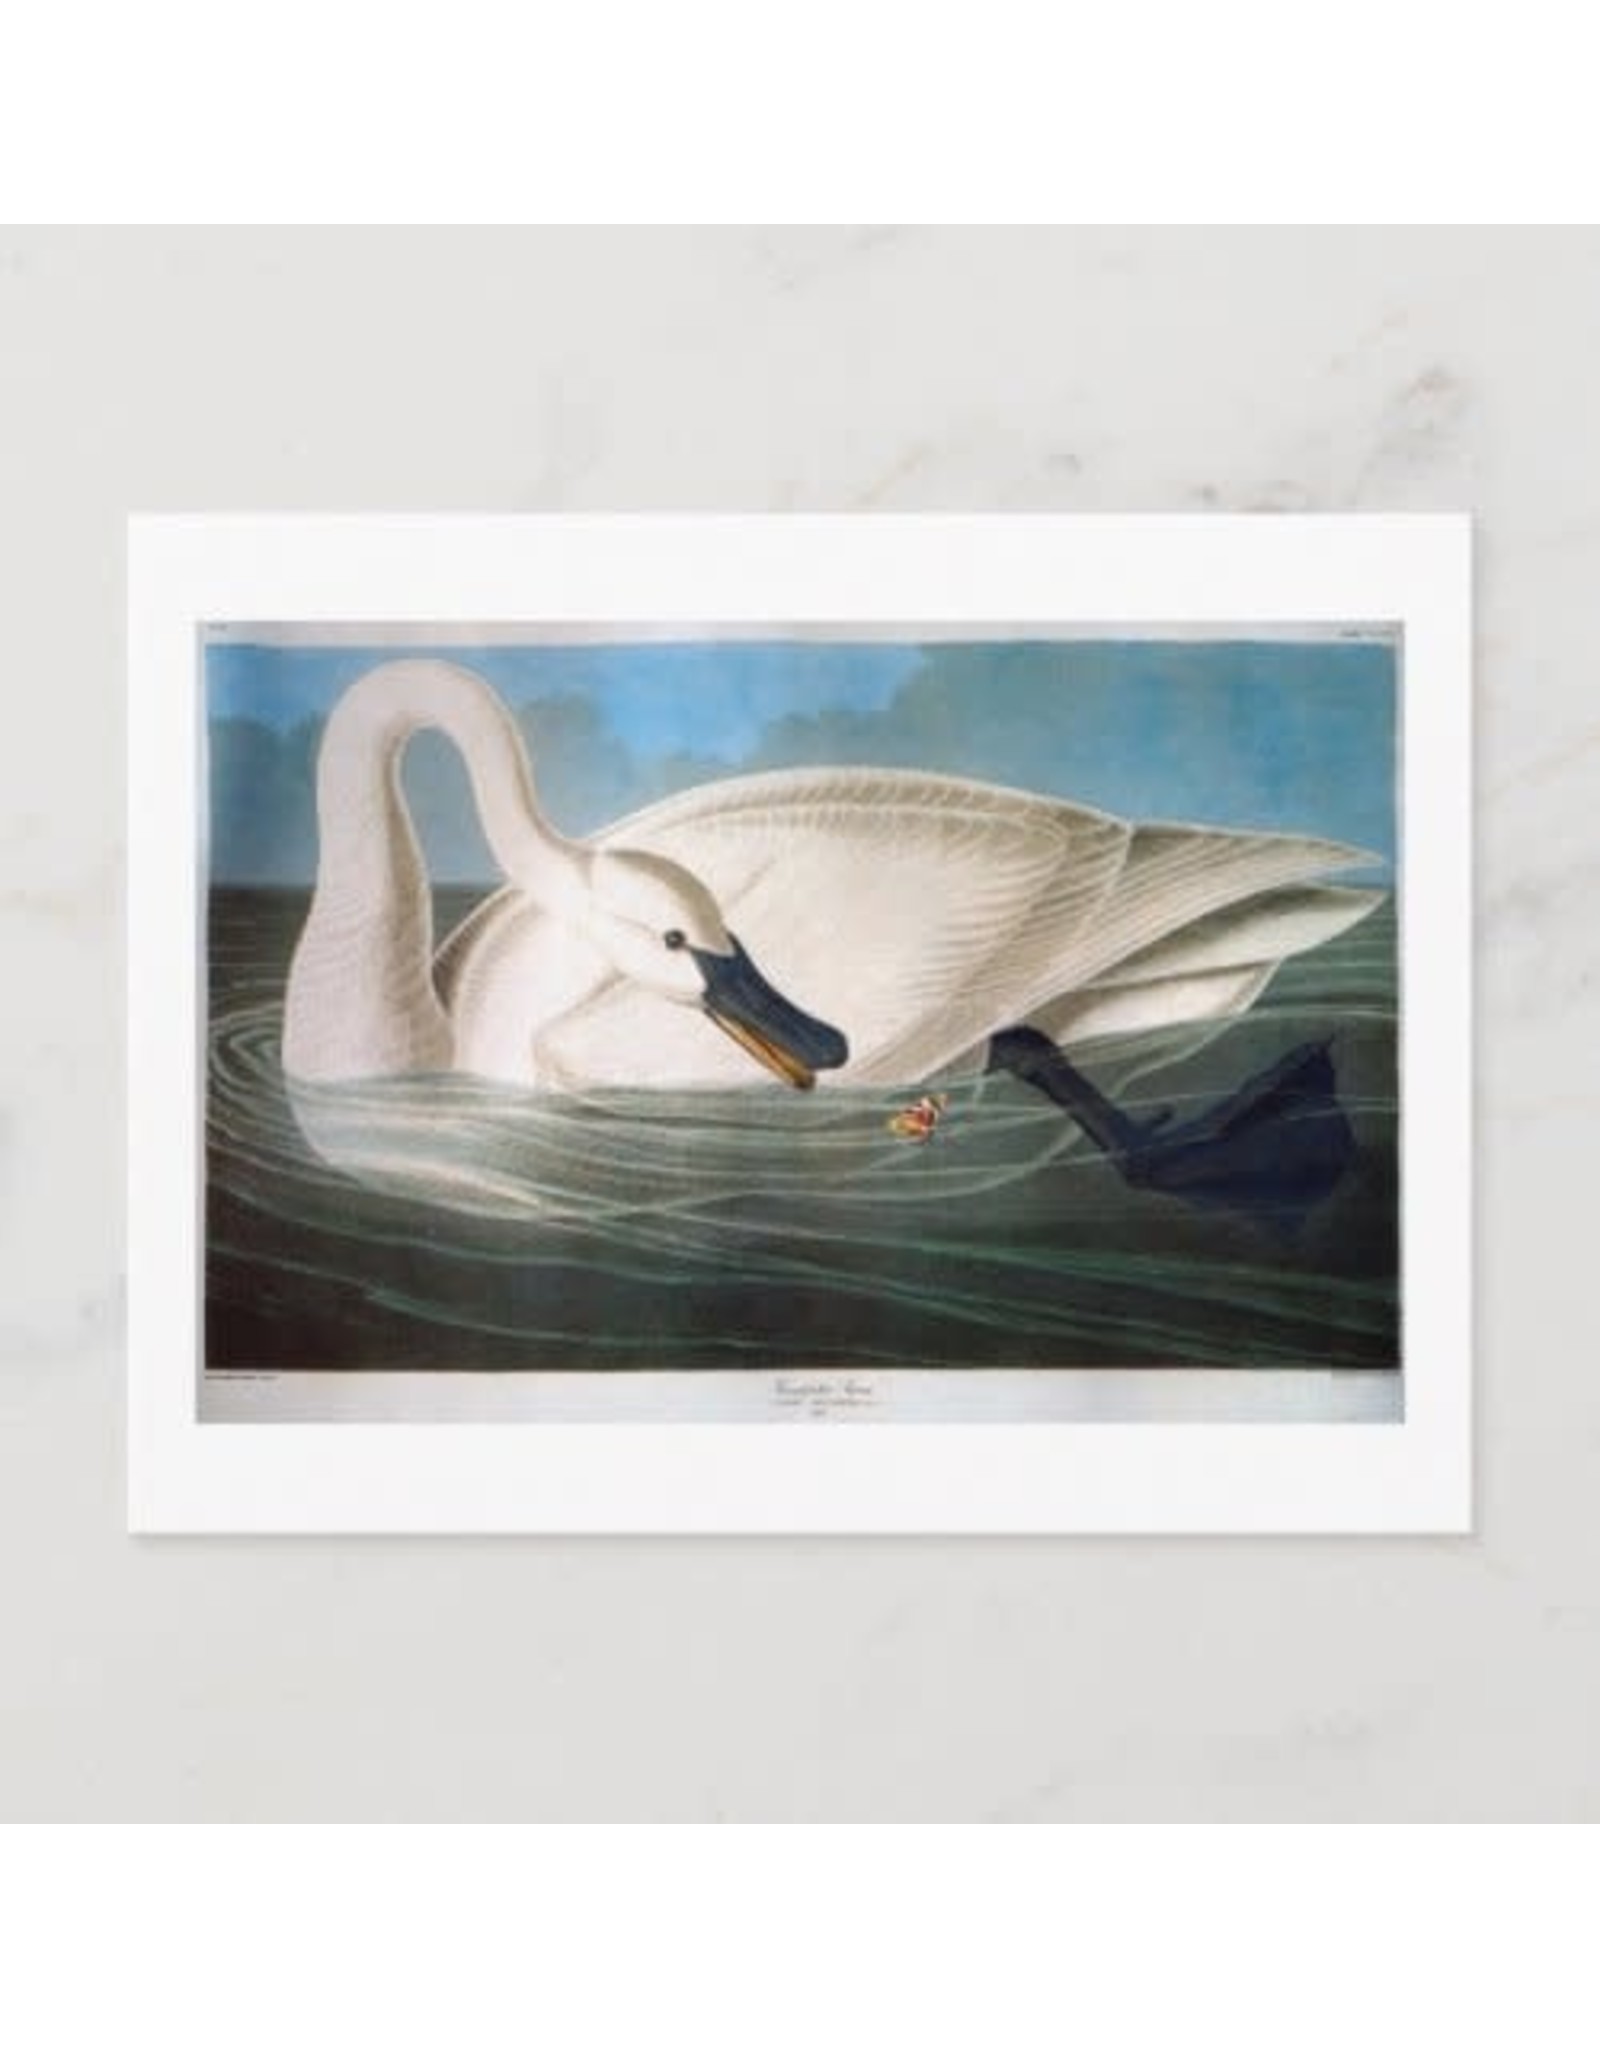 Trumpeter Swan Postcard